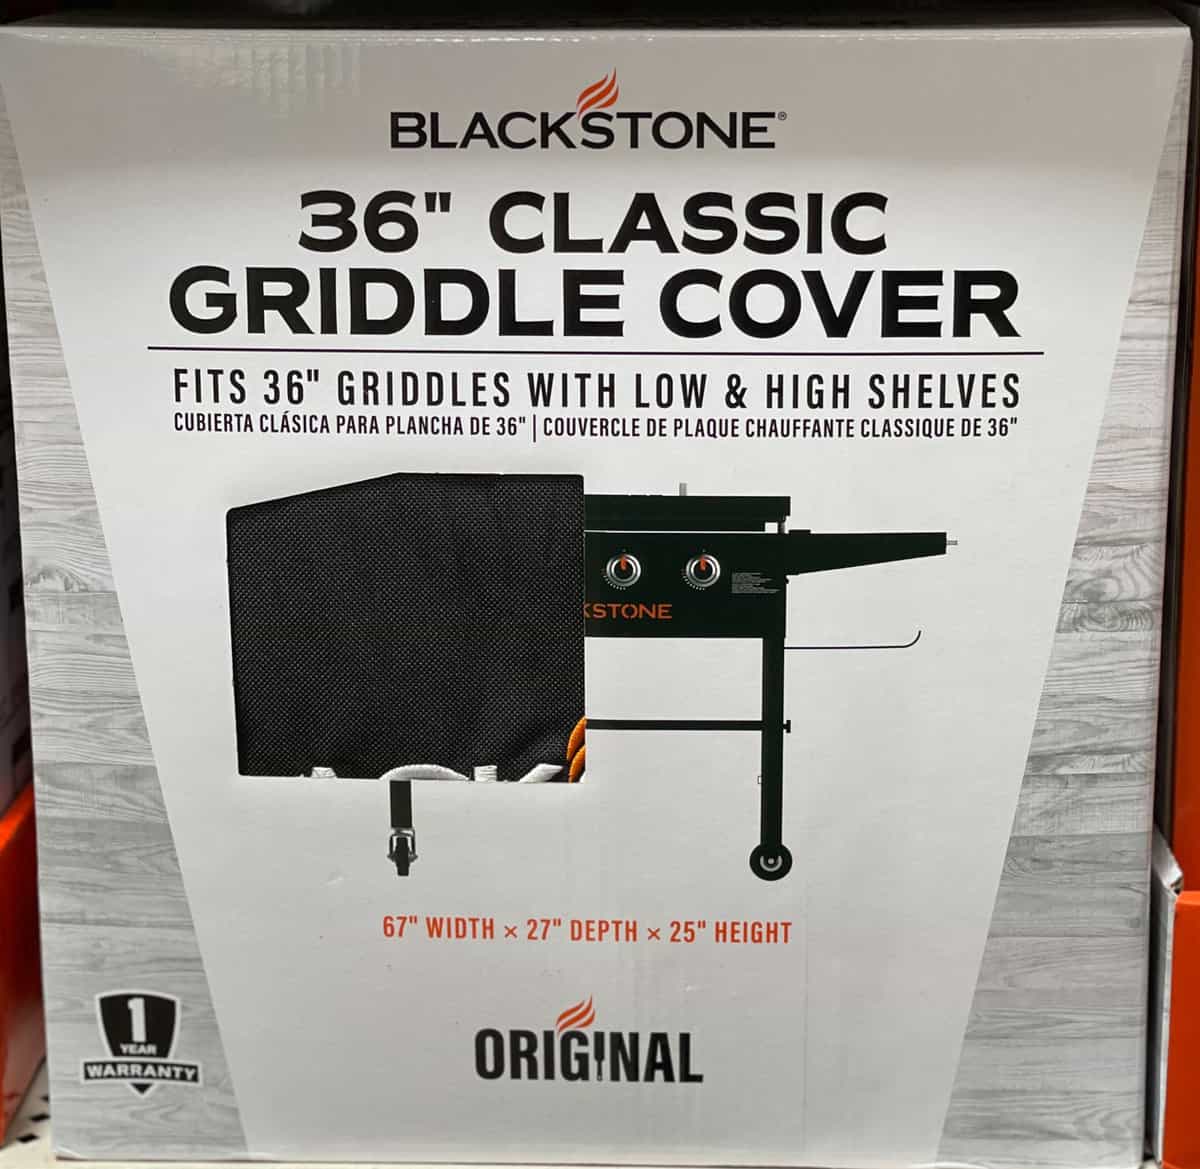 blackstone grill cover